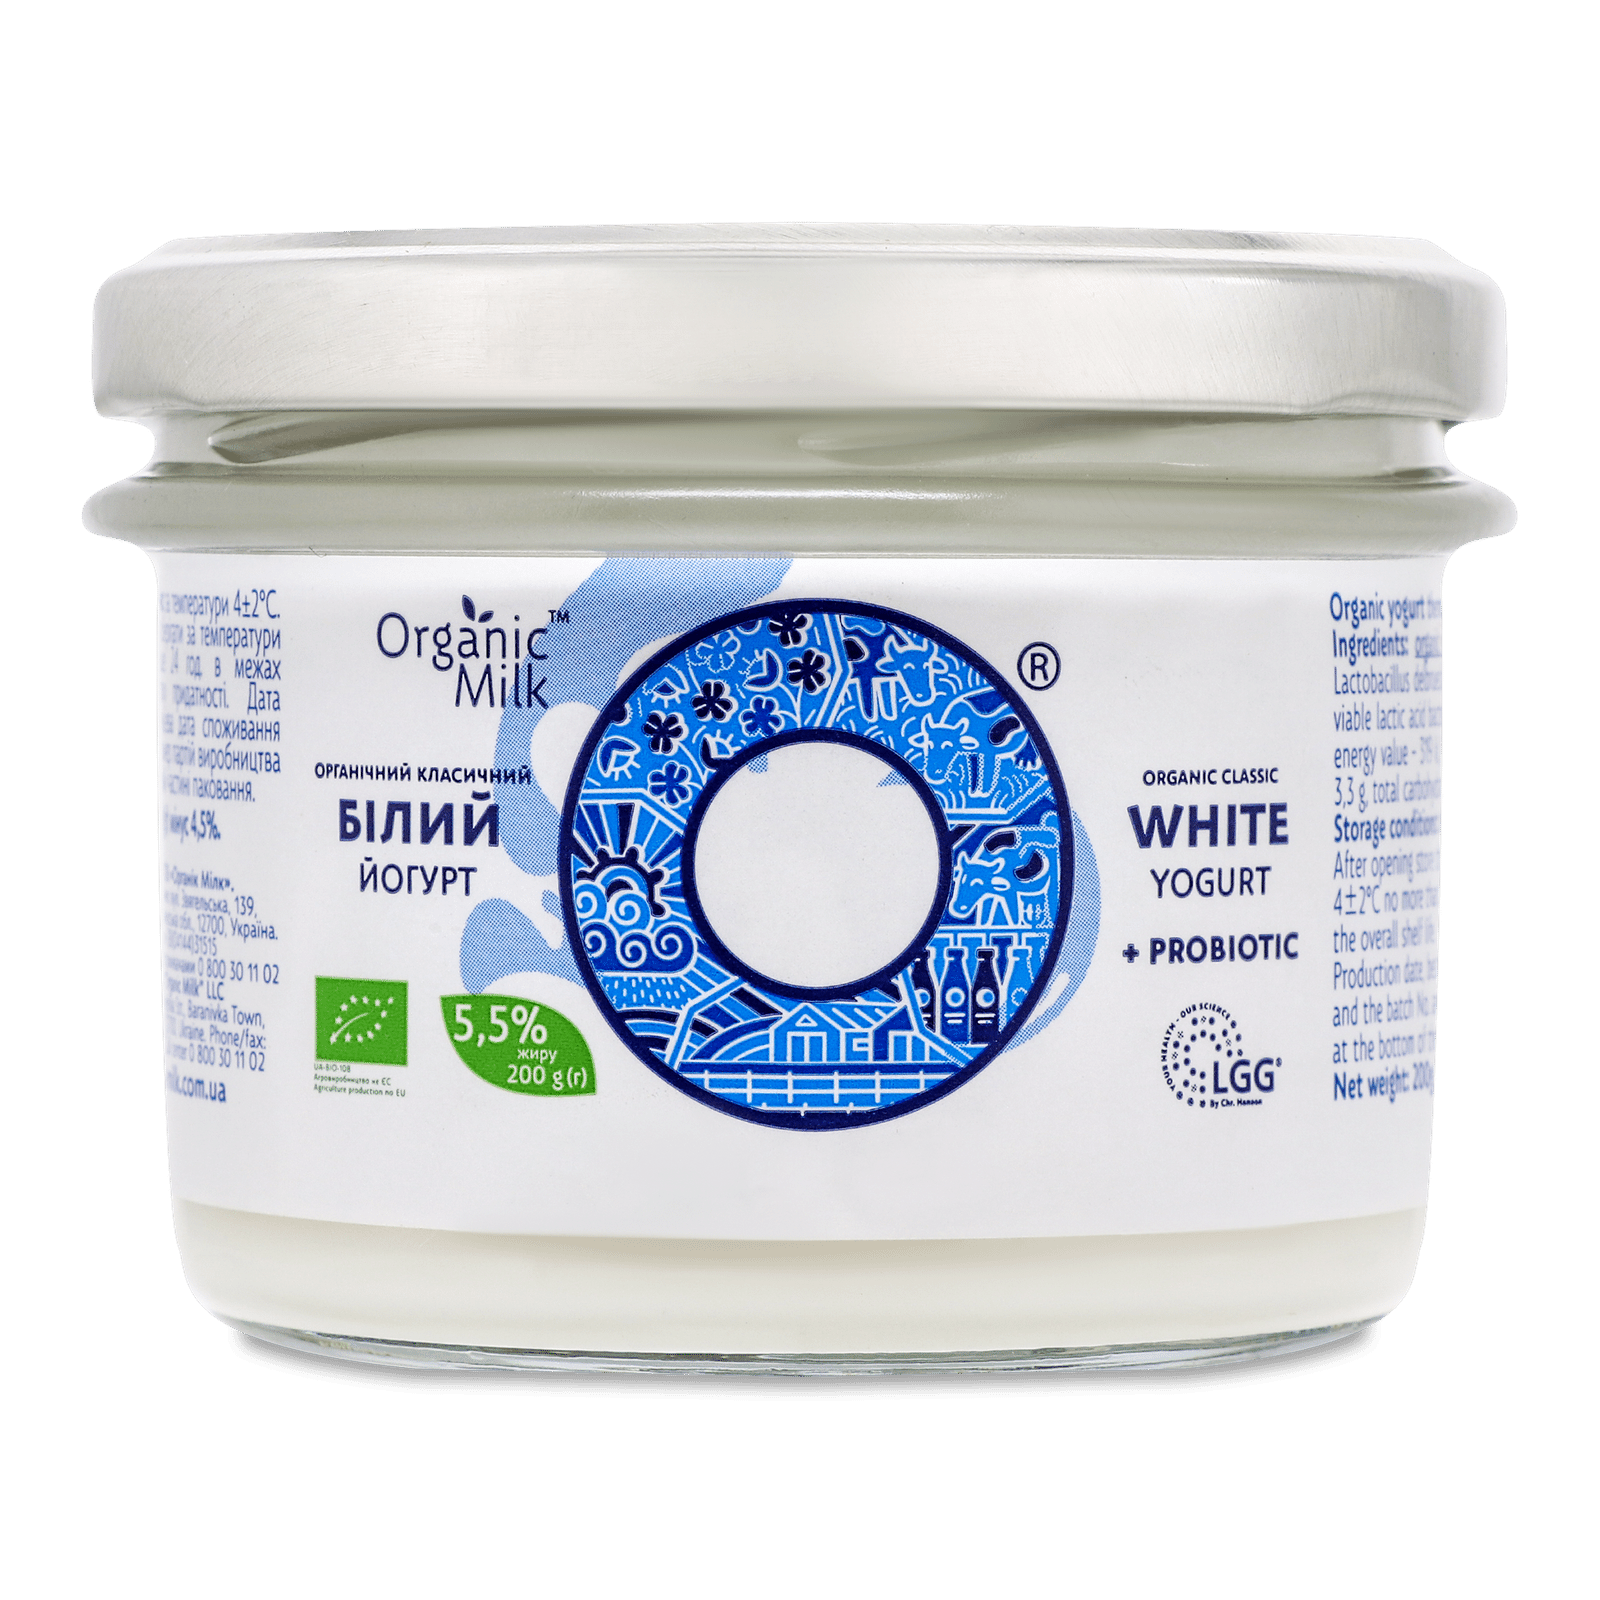 Йогурт Organic Milk білий 5,5% - 1